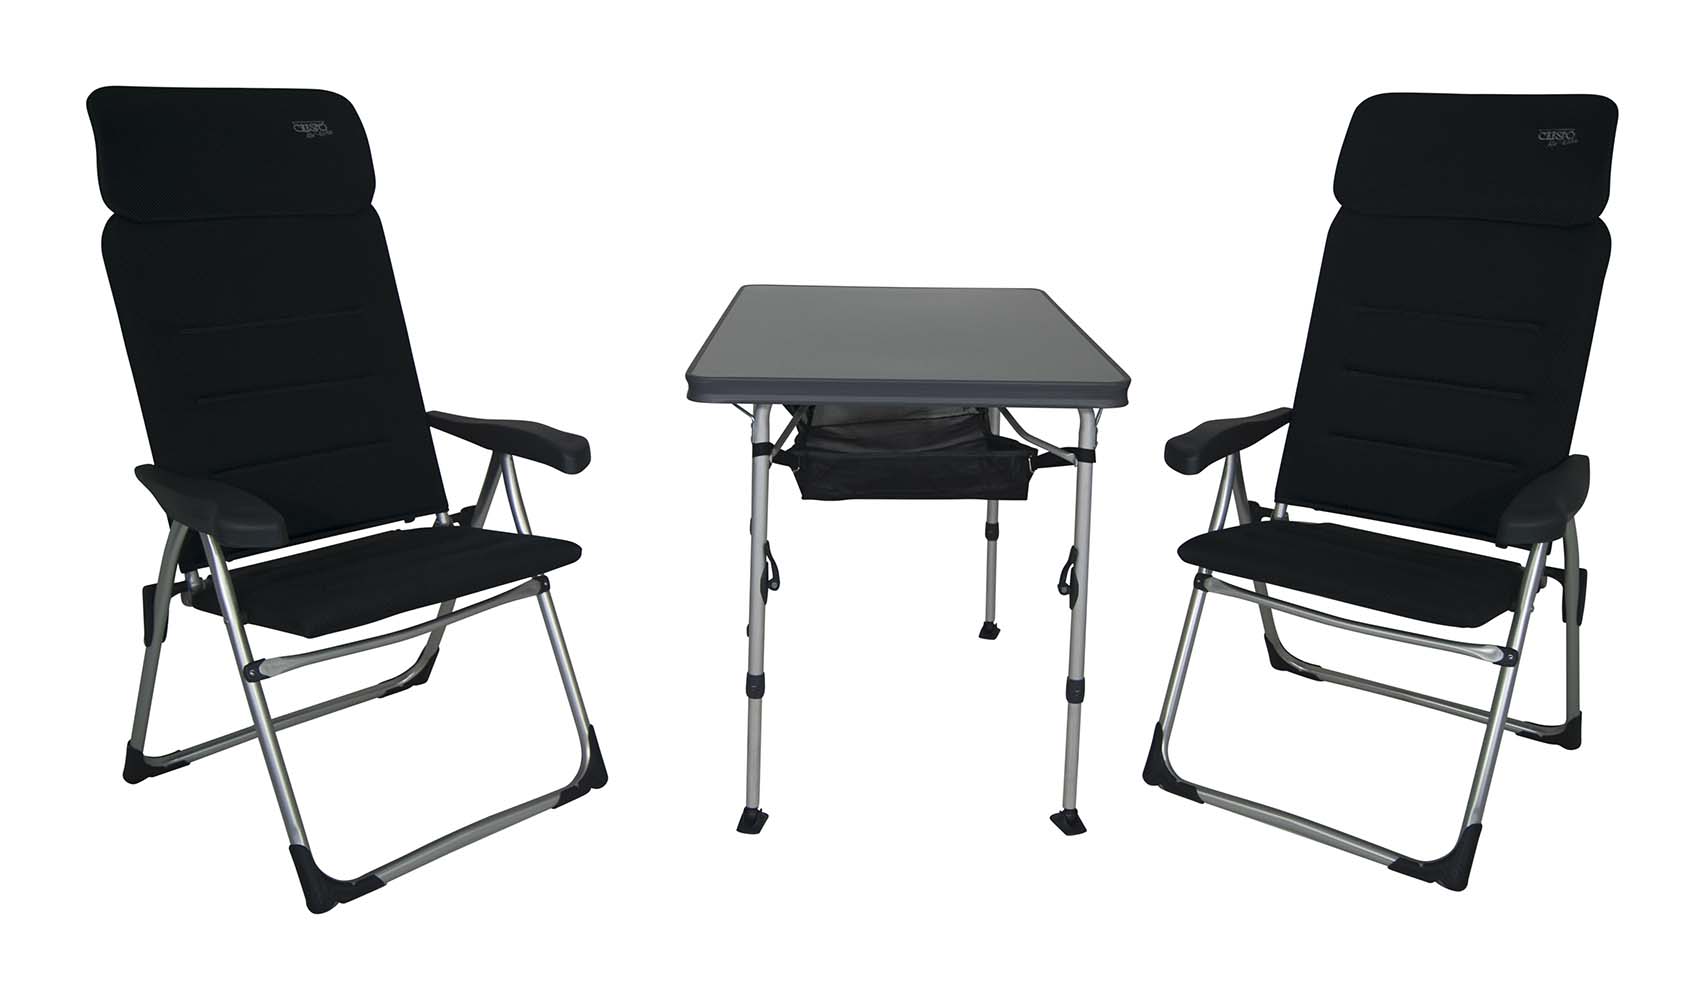 1104968 Een set bestaande uit 2 AA-213 Air-Elite Compact stoelen, een tafel AL-246 met opbergnet en opberghoes. Zeer compacte en ideale set voor 2 personen. De set is zeer compact mee te nemen. Inclusief opberghoes. In totaliteit is de set compact opvouwbaar en maar 18 cm dik.